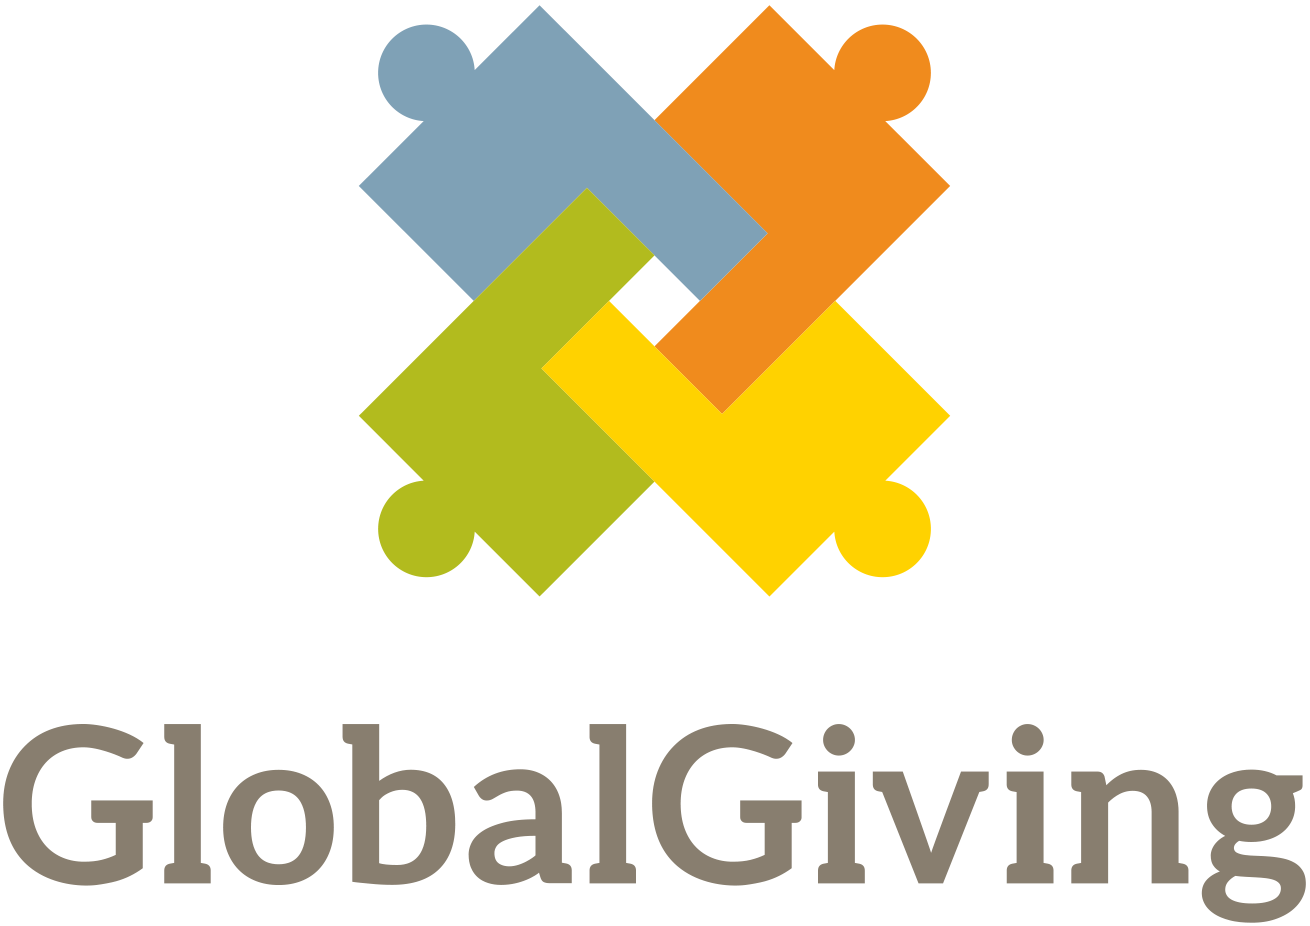 GlobalGiving, Focus: Worldwide